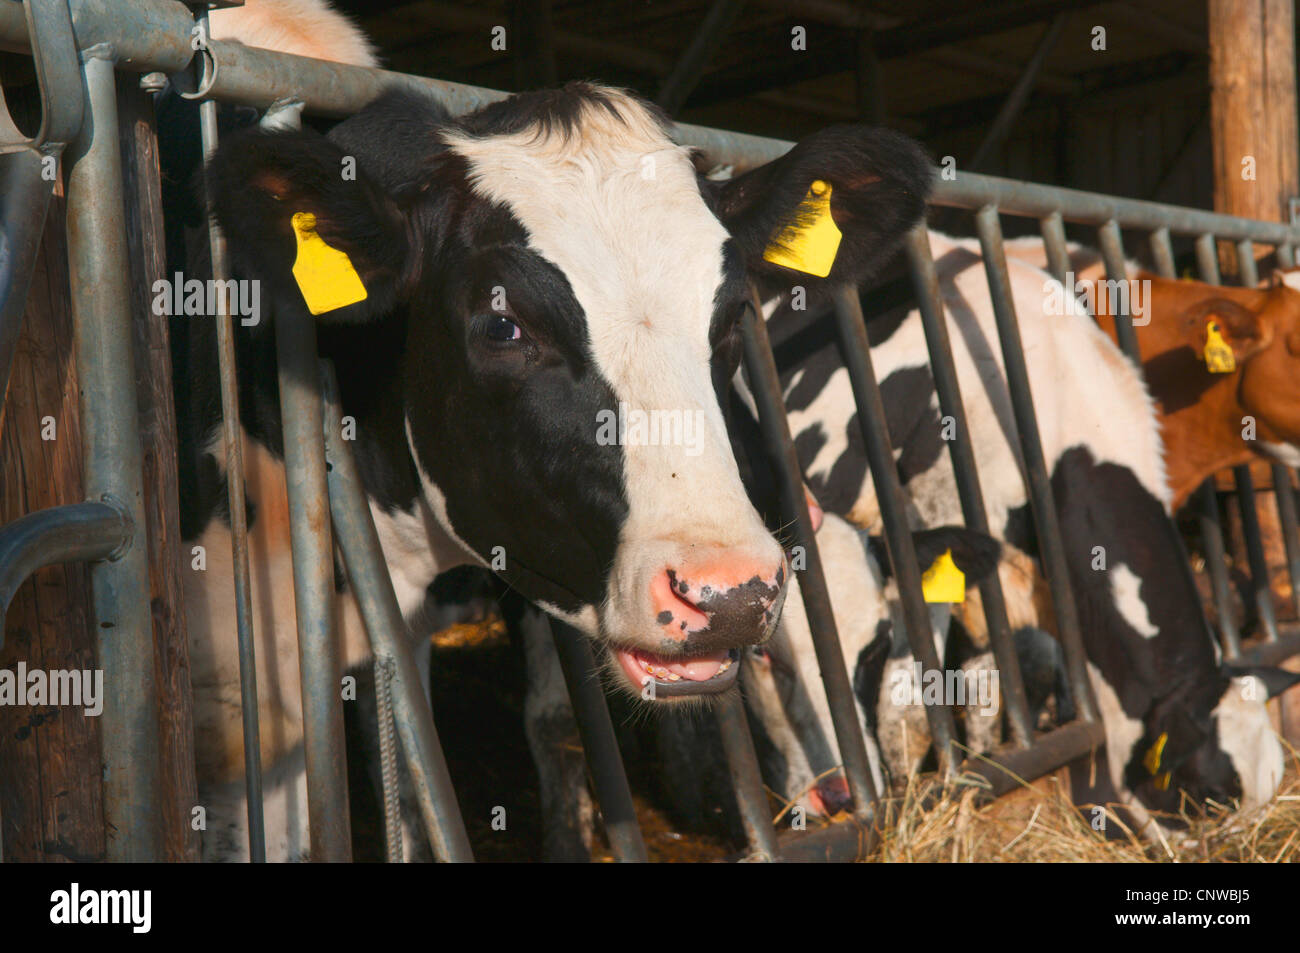 Les bovins domestiques (Bos primigenius f. taurus), les vaches dans une écurie, l'hay, Allemagne Banque D'Images